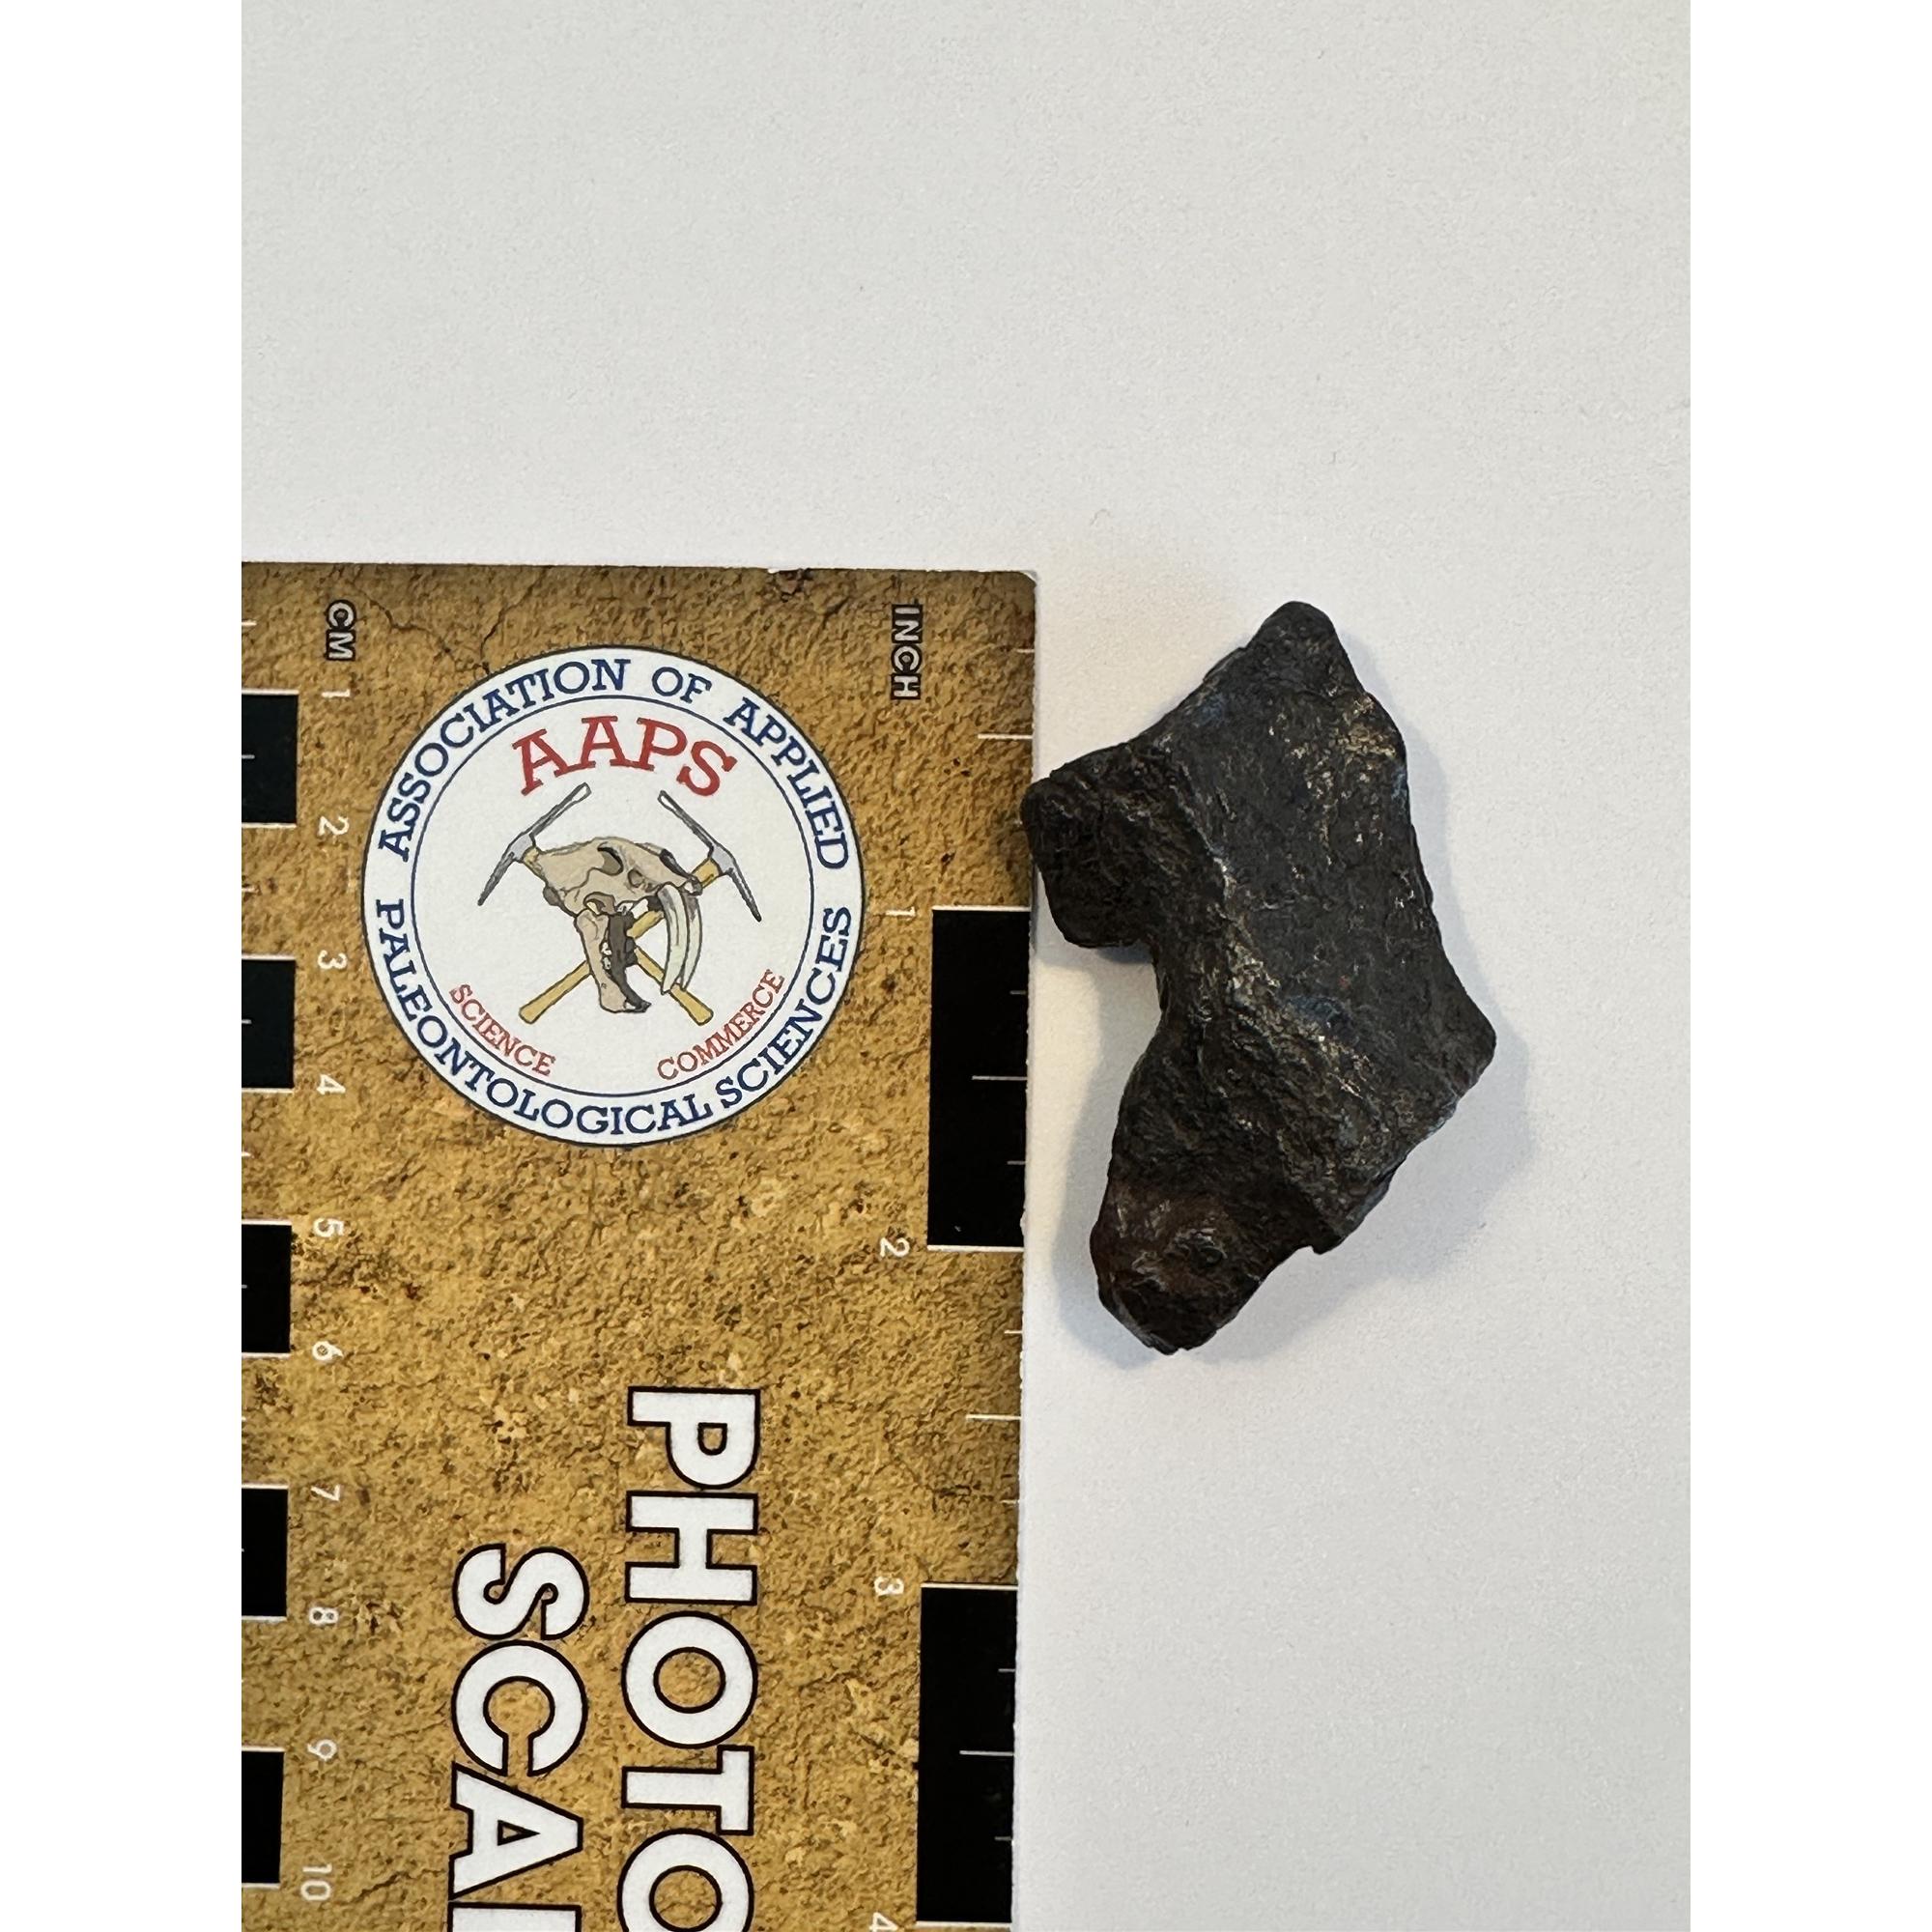 Meteorite, Canyon Diablo, meteor crater Prehistoric Online